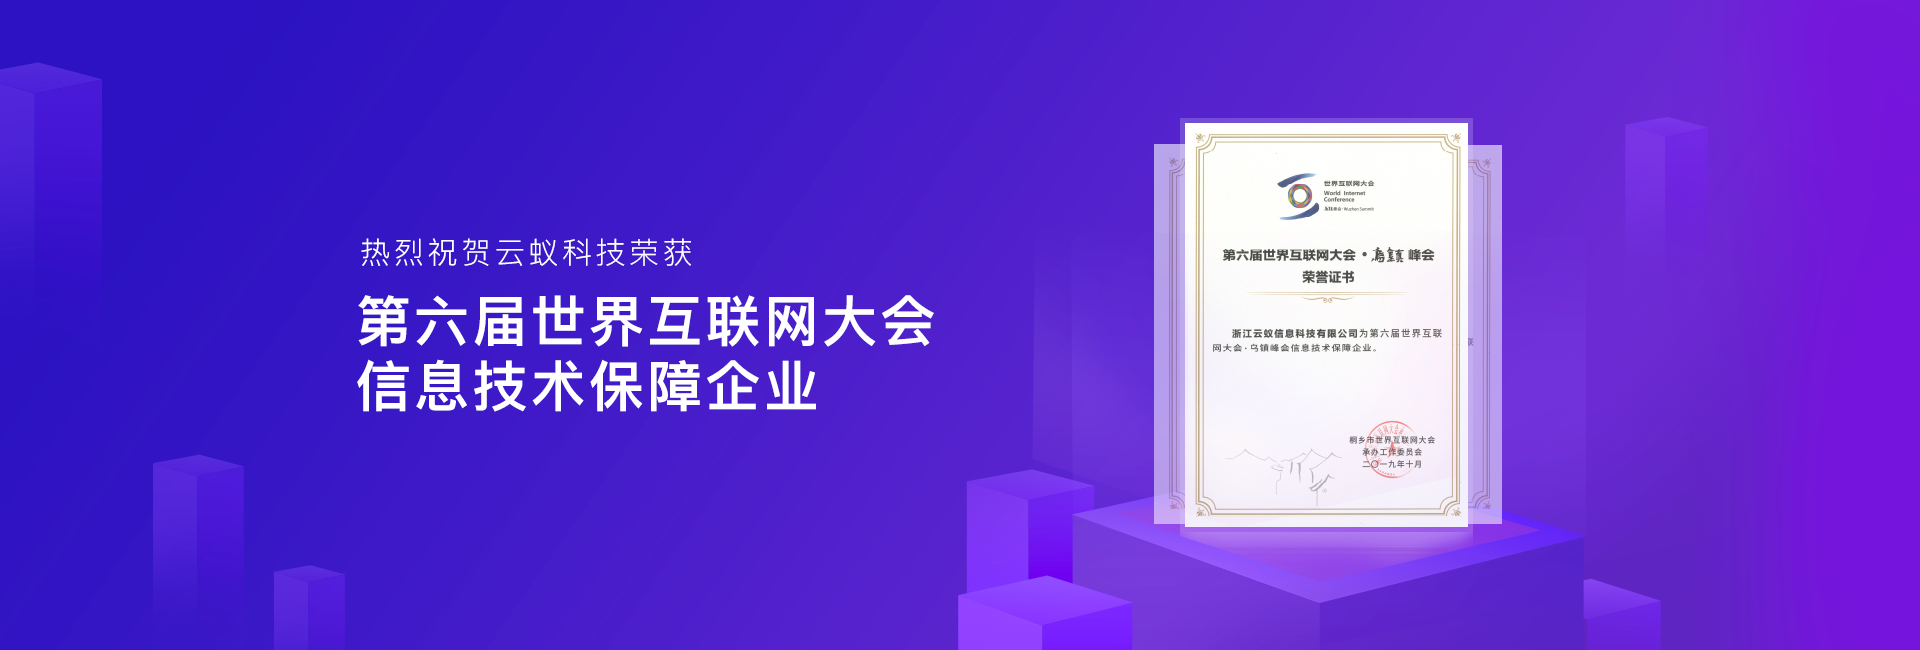 云蚁科技荣获第六届世界互联网大会信息技术保障企业荣誉证书